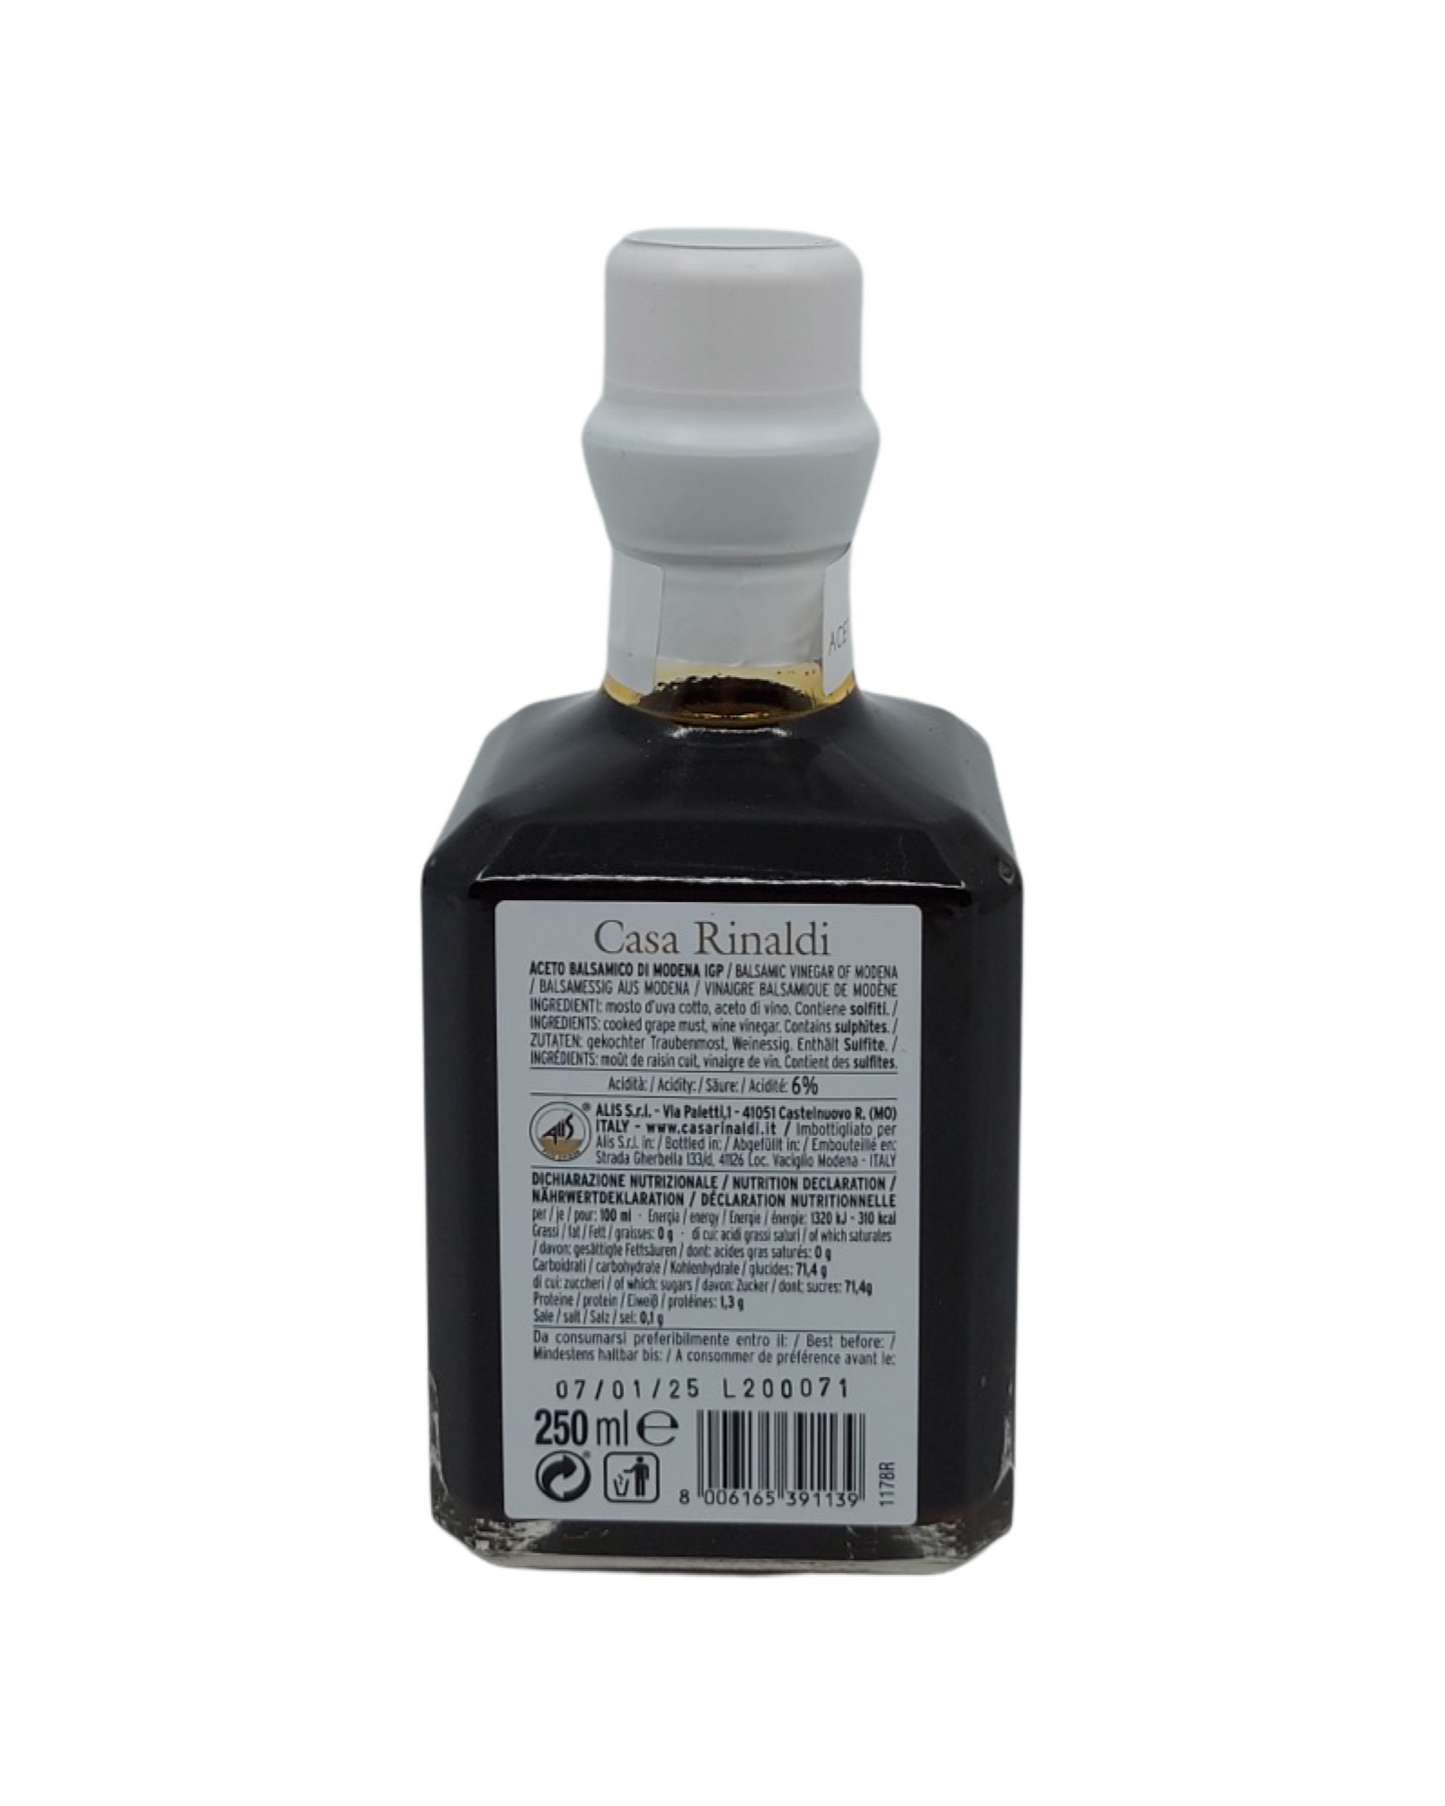 Aged Balsamic Vinegar of Modena - Cubic bottle (250ml)